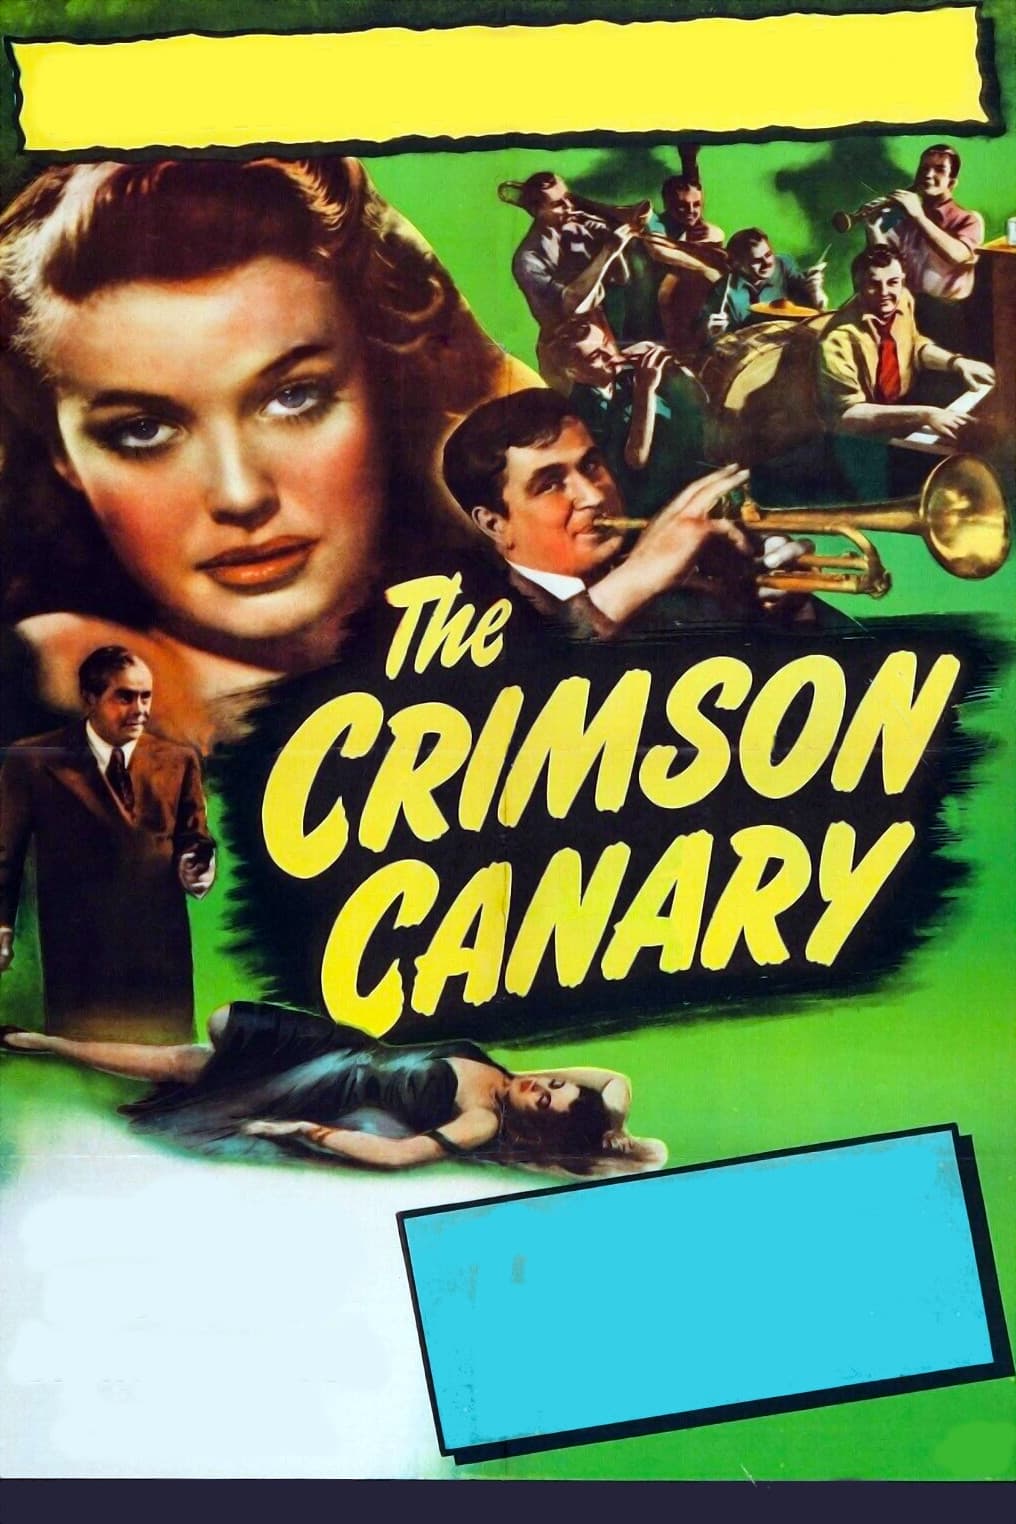 The Crimson Canary